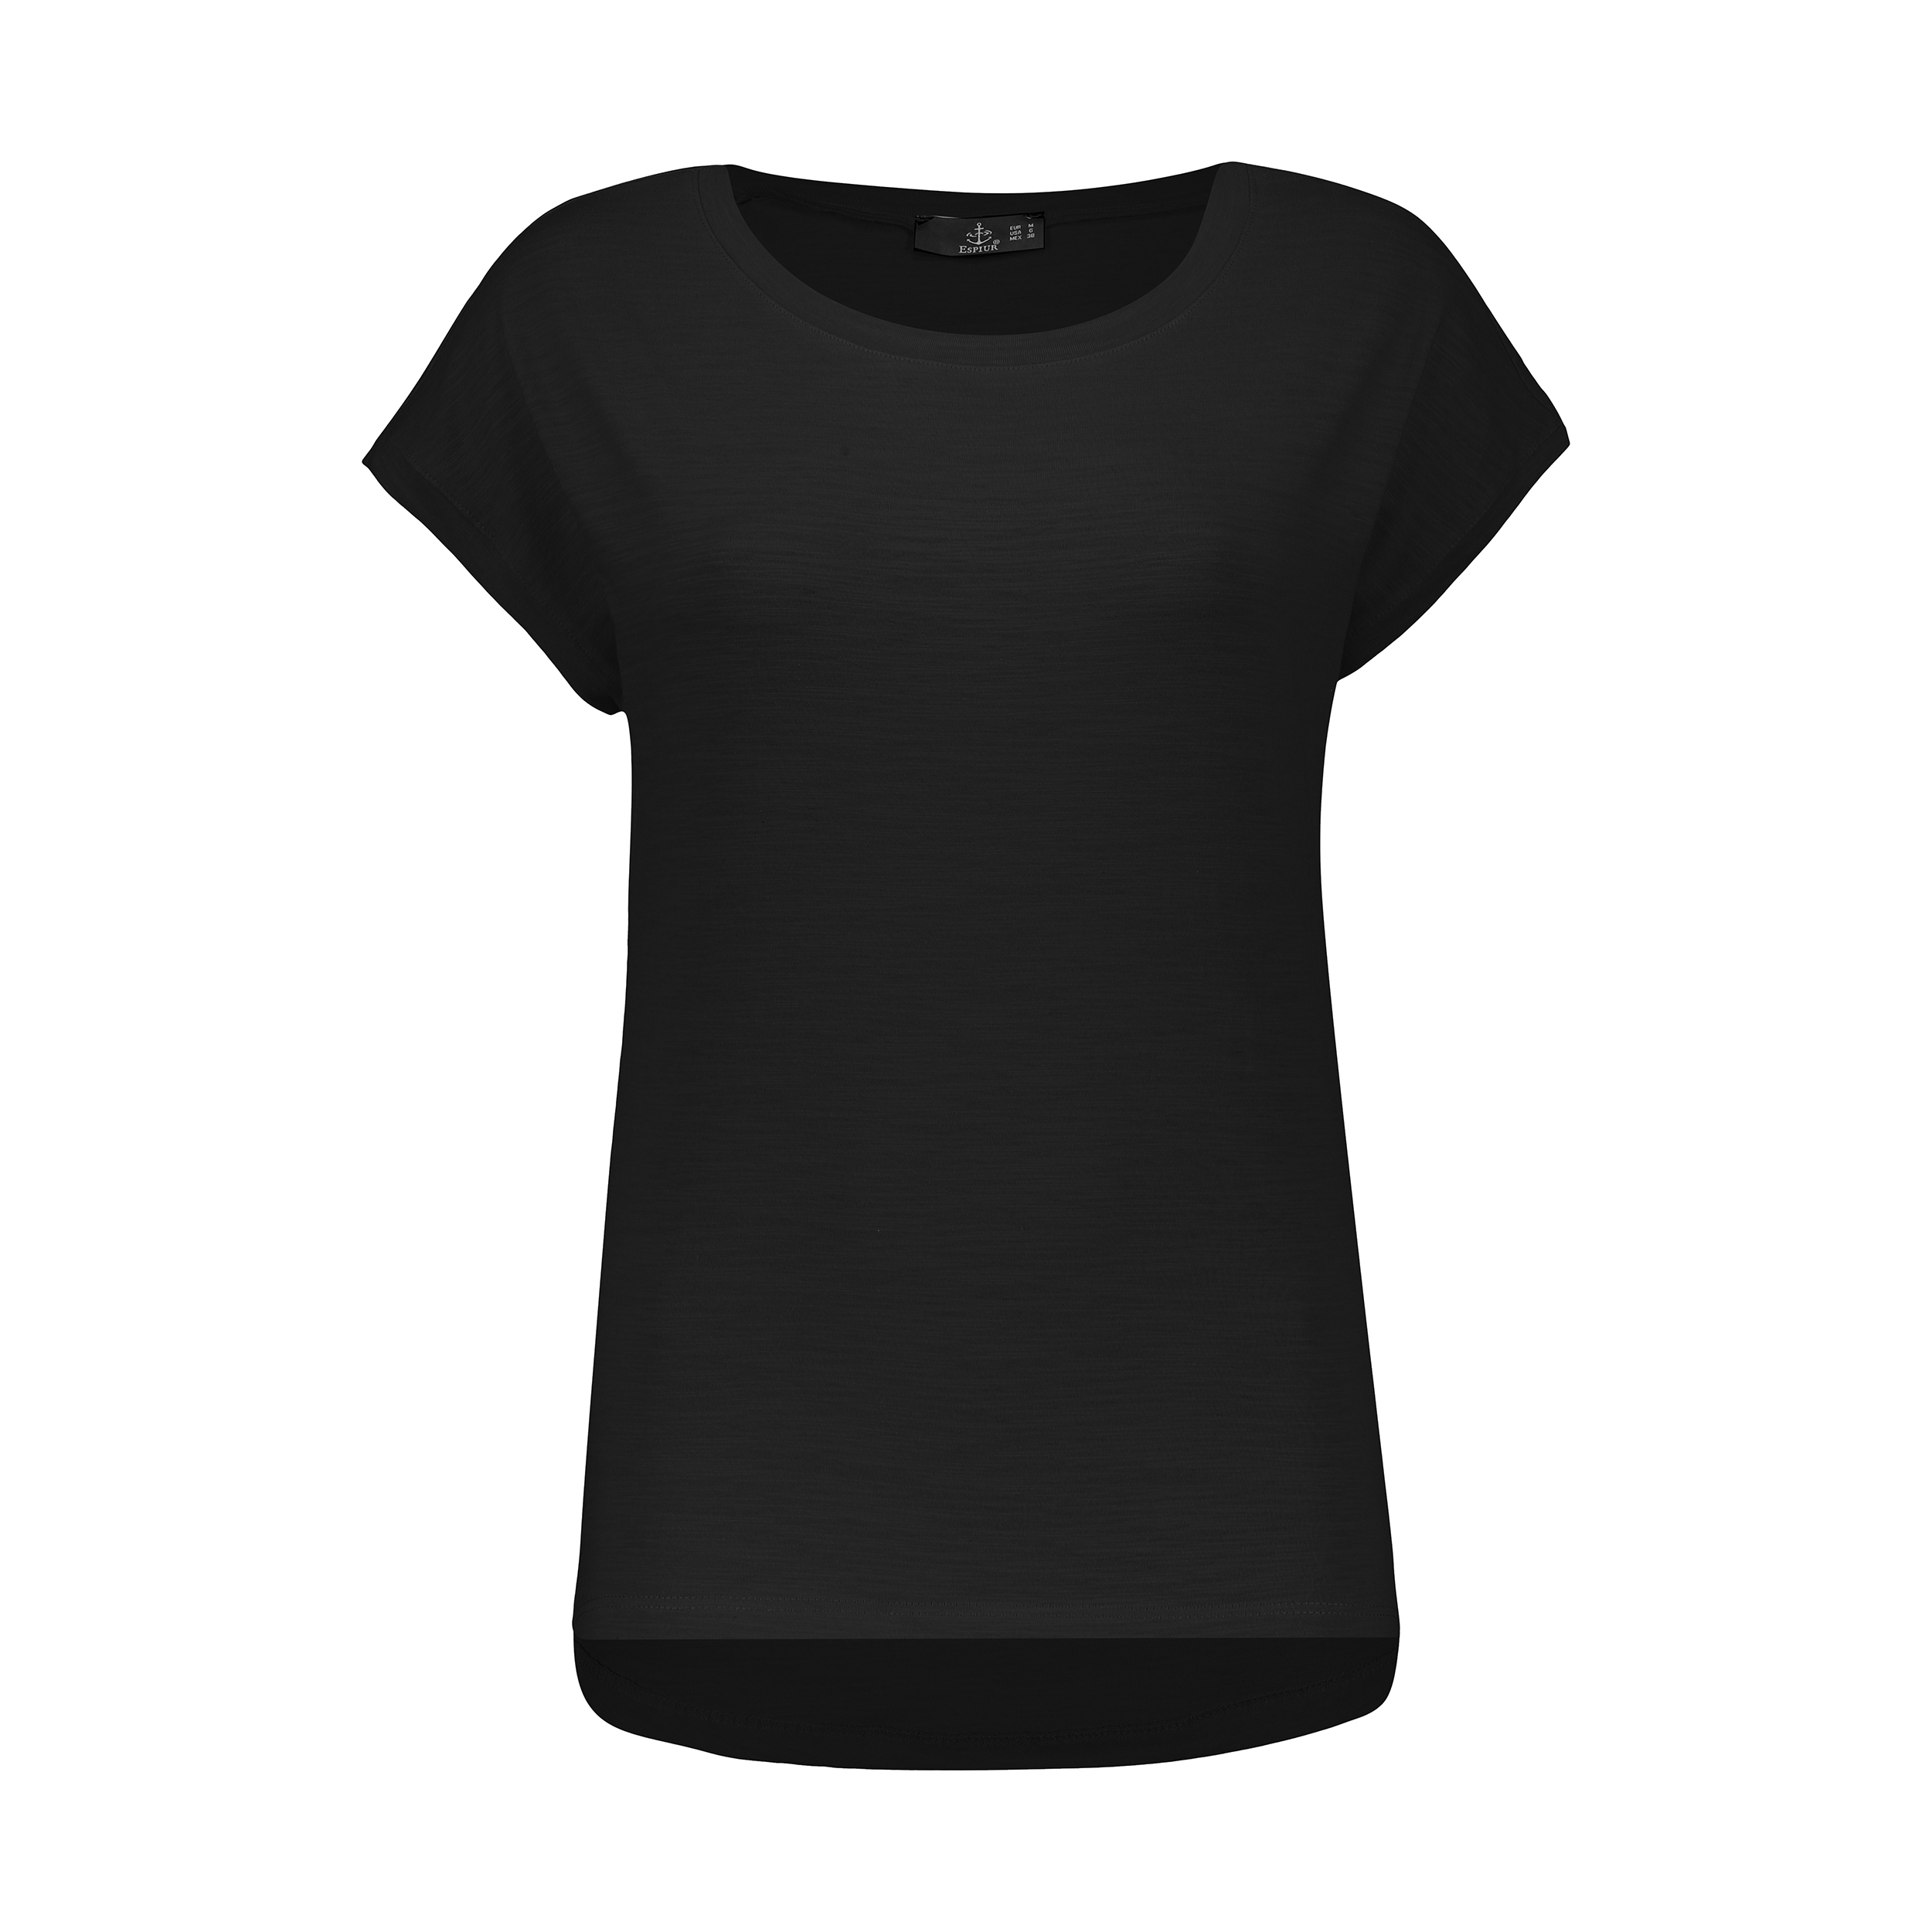 تی شرت زنانه اسپیور مدل 2W02M-01 -  - 1